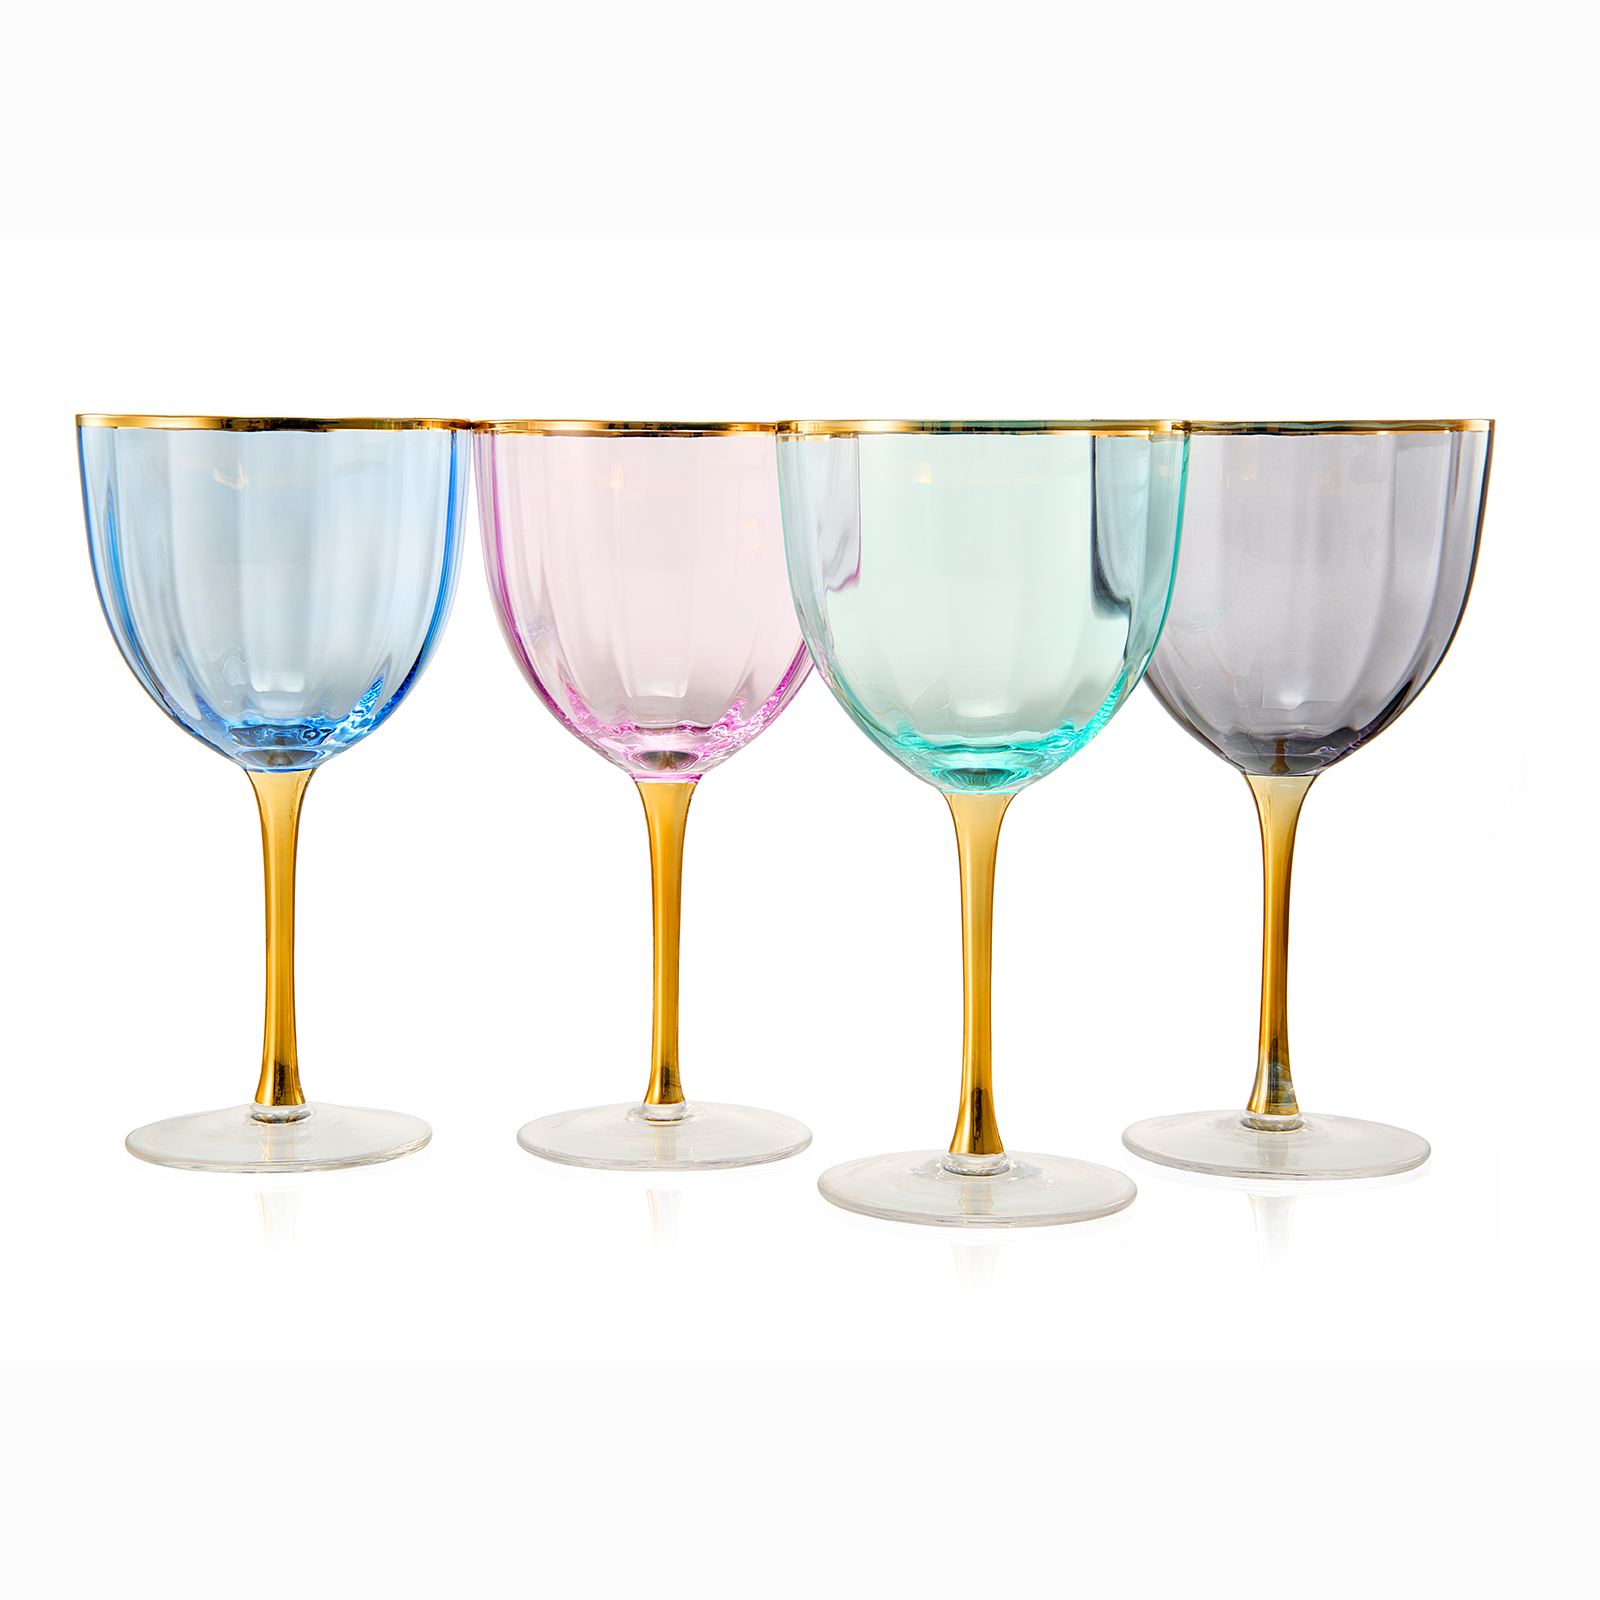 Colored Crystal Wine Glass Set of 6, Large Stemmed 12 oz Glasses